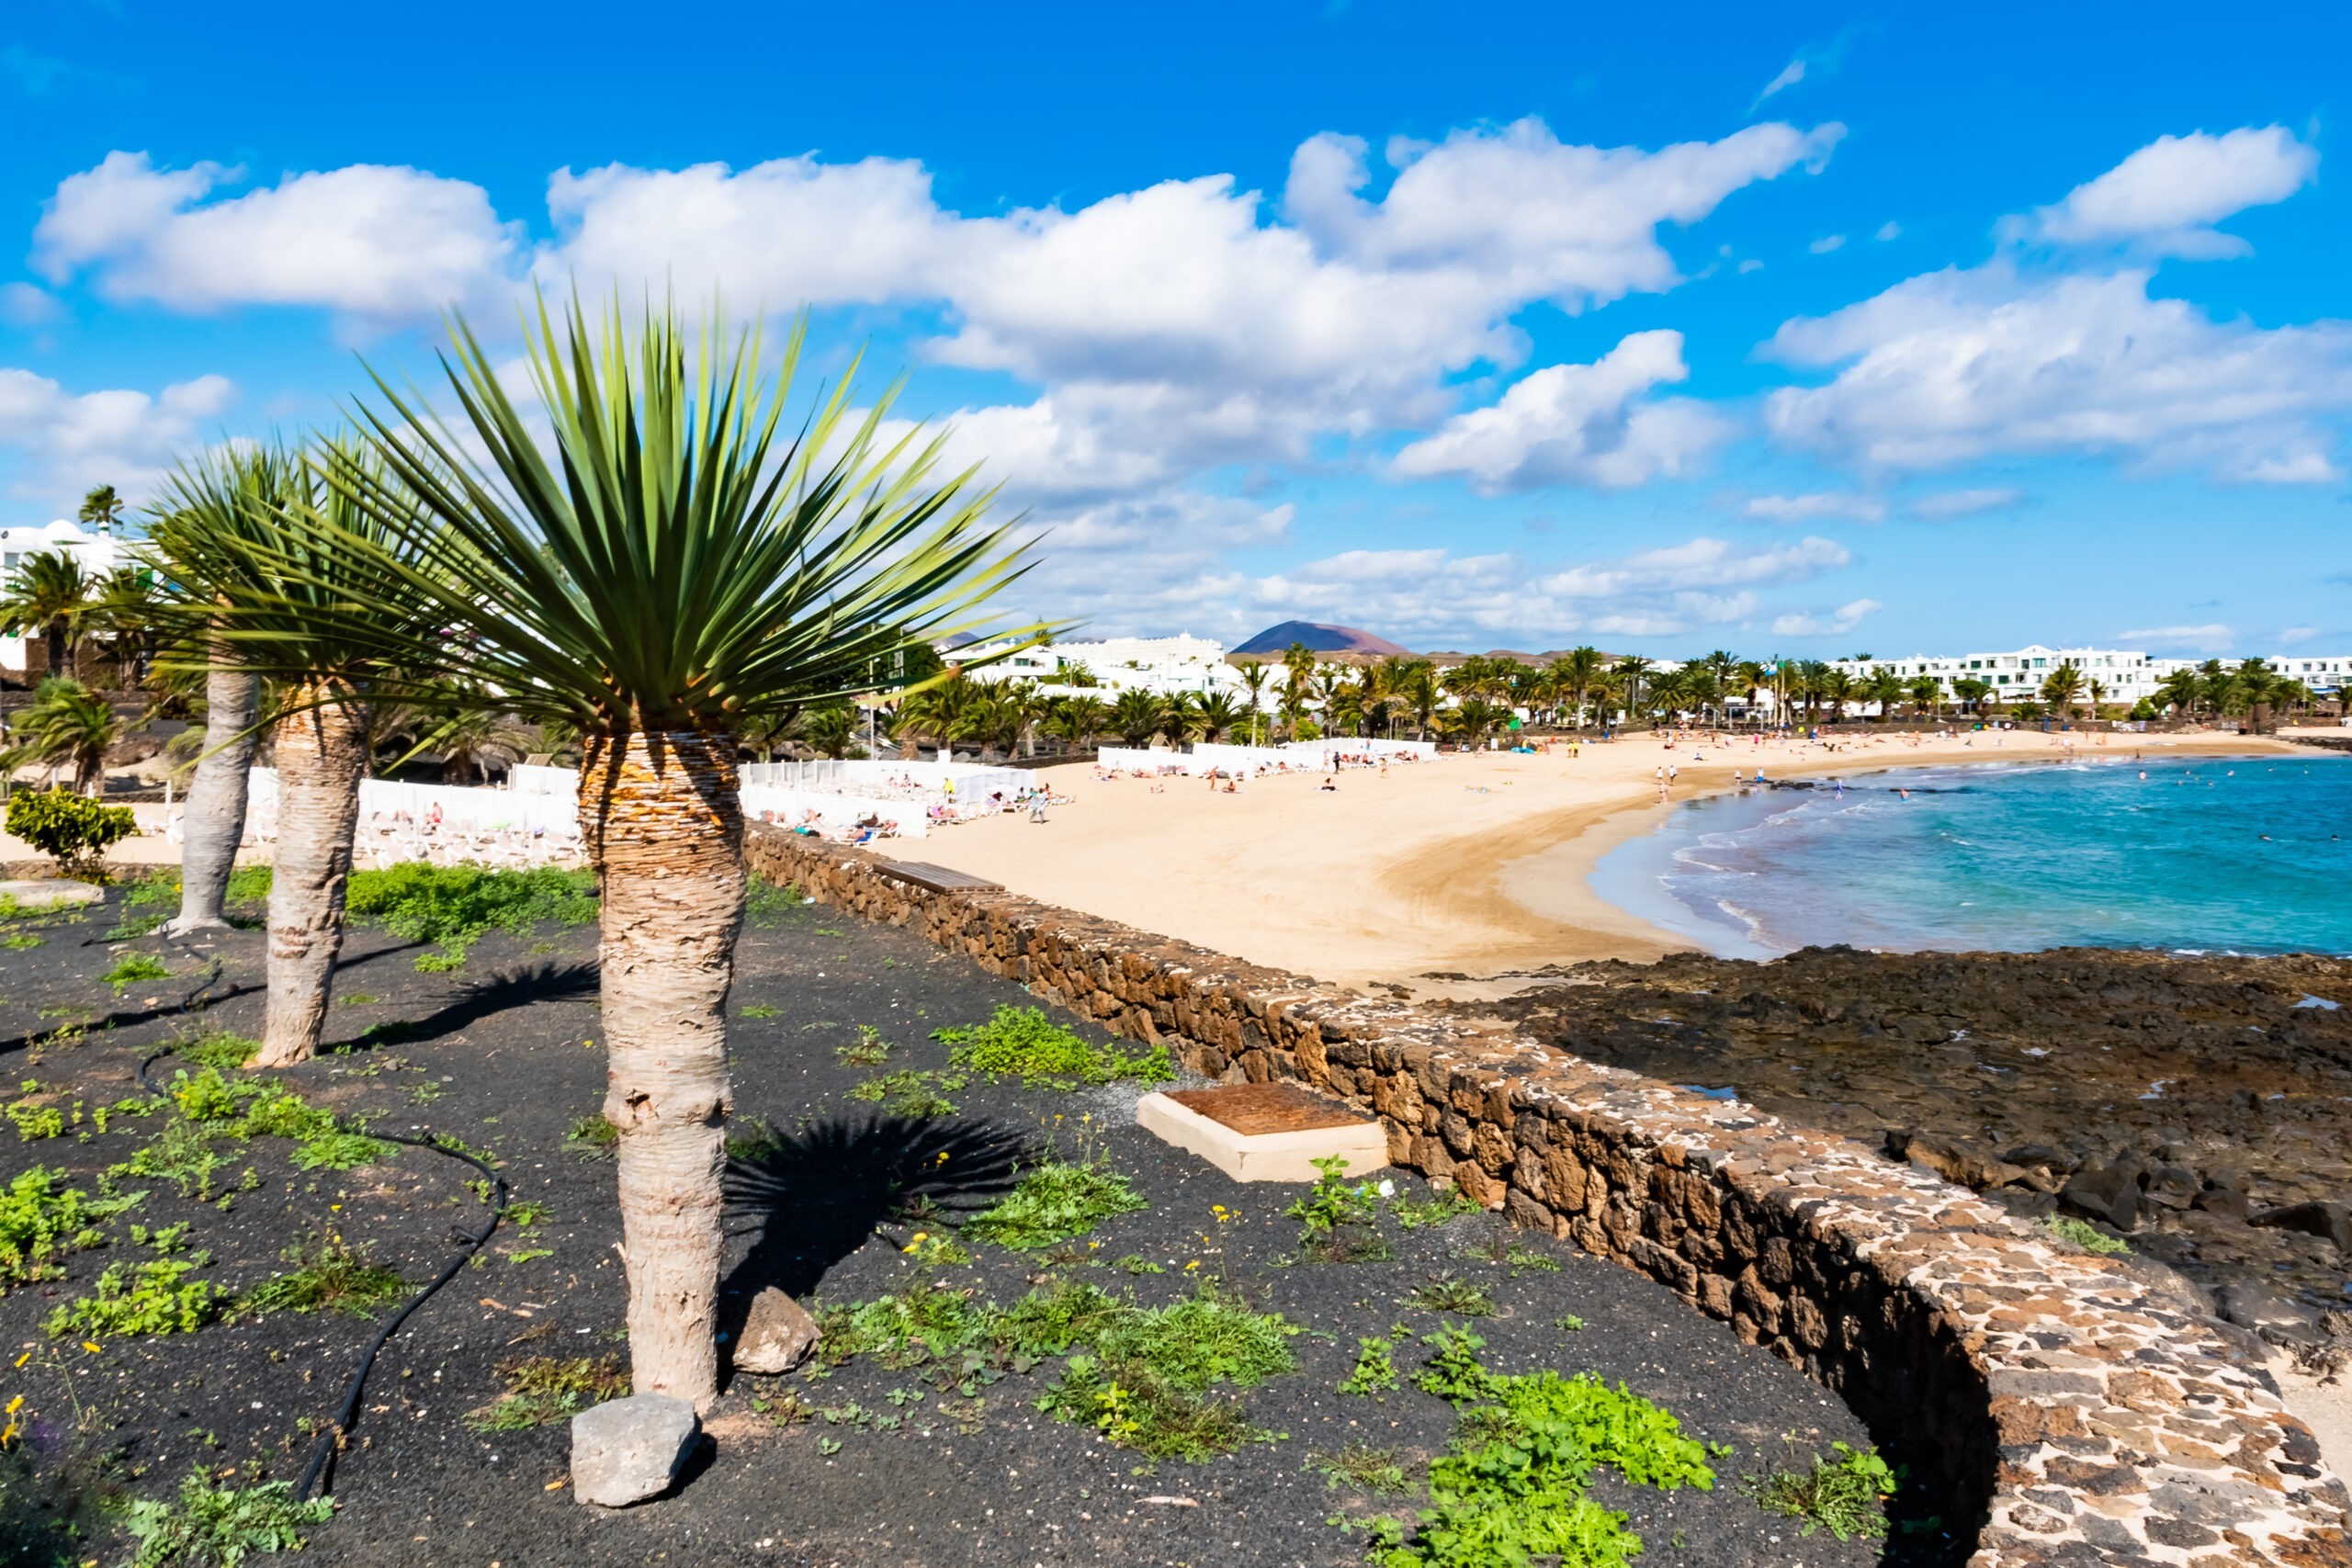 Piaszczysta plaża w Costa Teguise, Lanzarote, Wyspy Kanaryjskie, Hiszpania